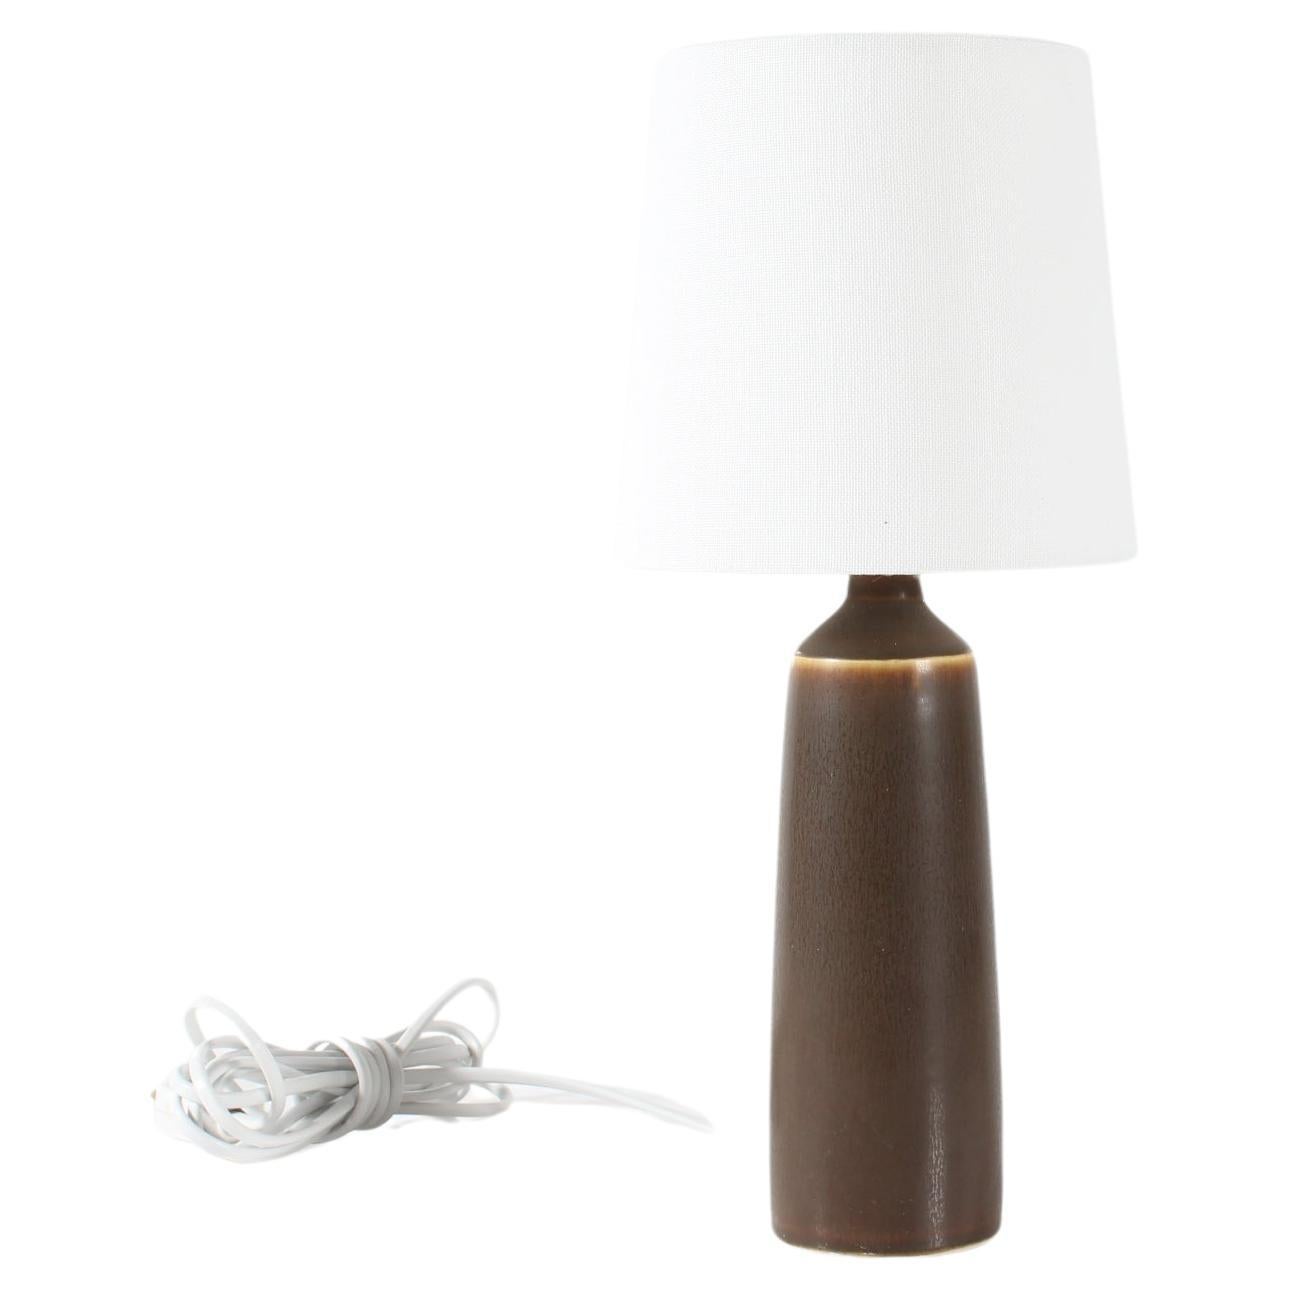 Petite lampe de table et de chevet danoise fabriquée par le  atelier de céramique Palshus.
La lampe a été conçue par Per Linnemann-Schmidt et fabriquée vers les années 1950 ou au début des années 1960.

La base de la lampe est décorée d'une glaçure